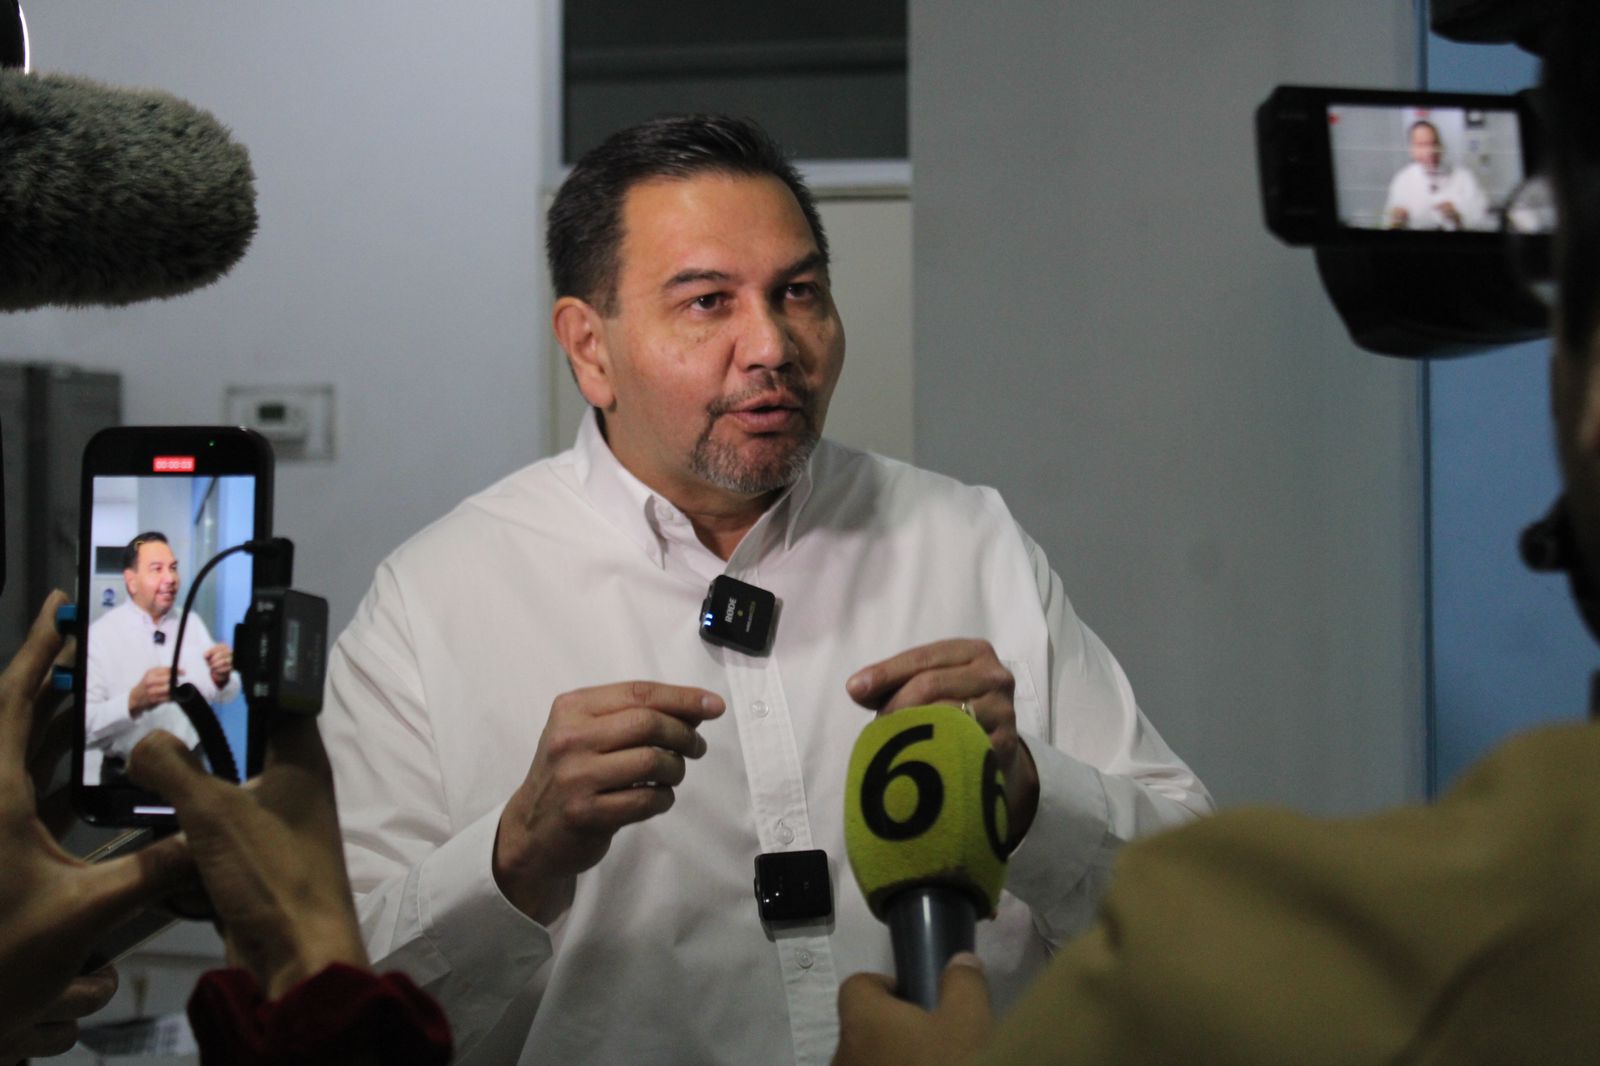 El representante de la Gobernadora panista está violando la Ley Electoral asegura Cruz Pérez Cuellar